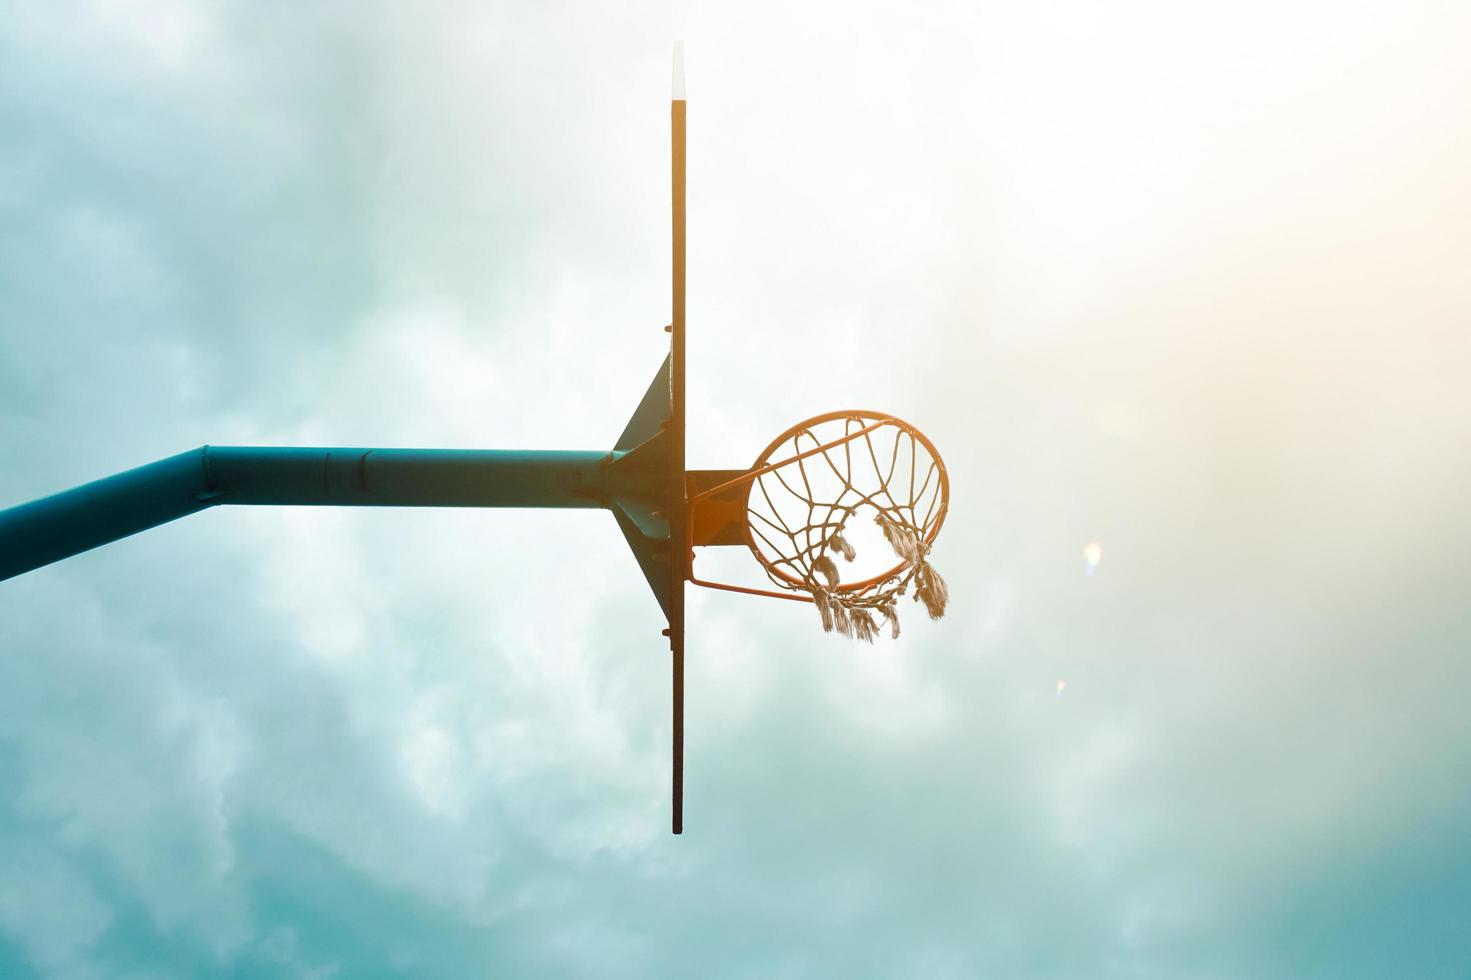 aro de baloncesto callejero, equipamiento deportivo foto